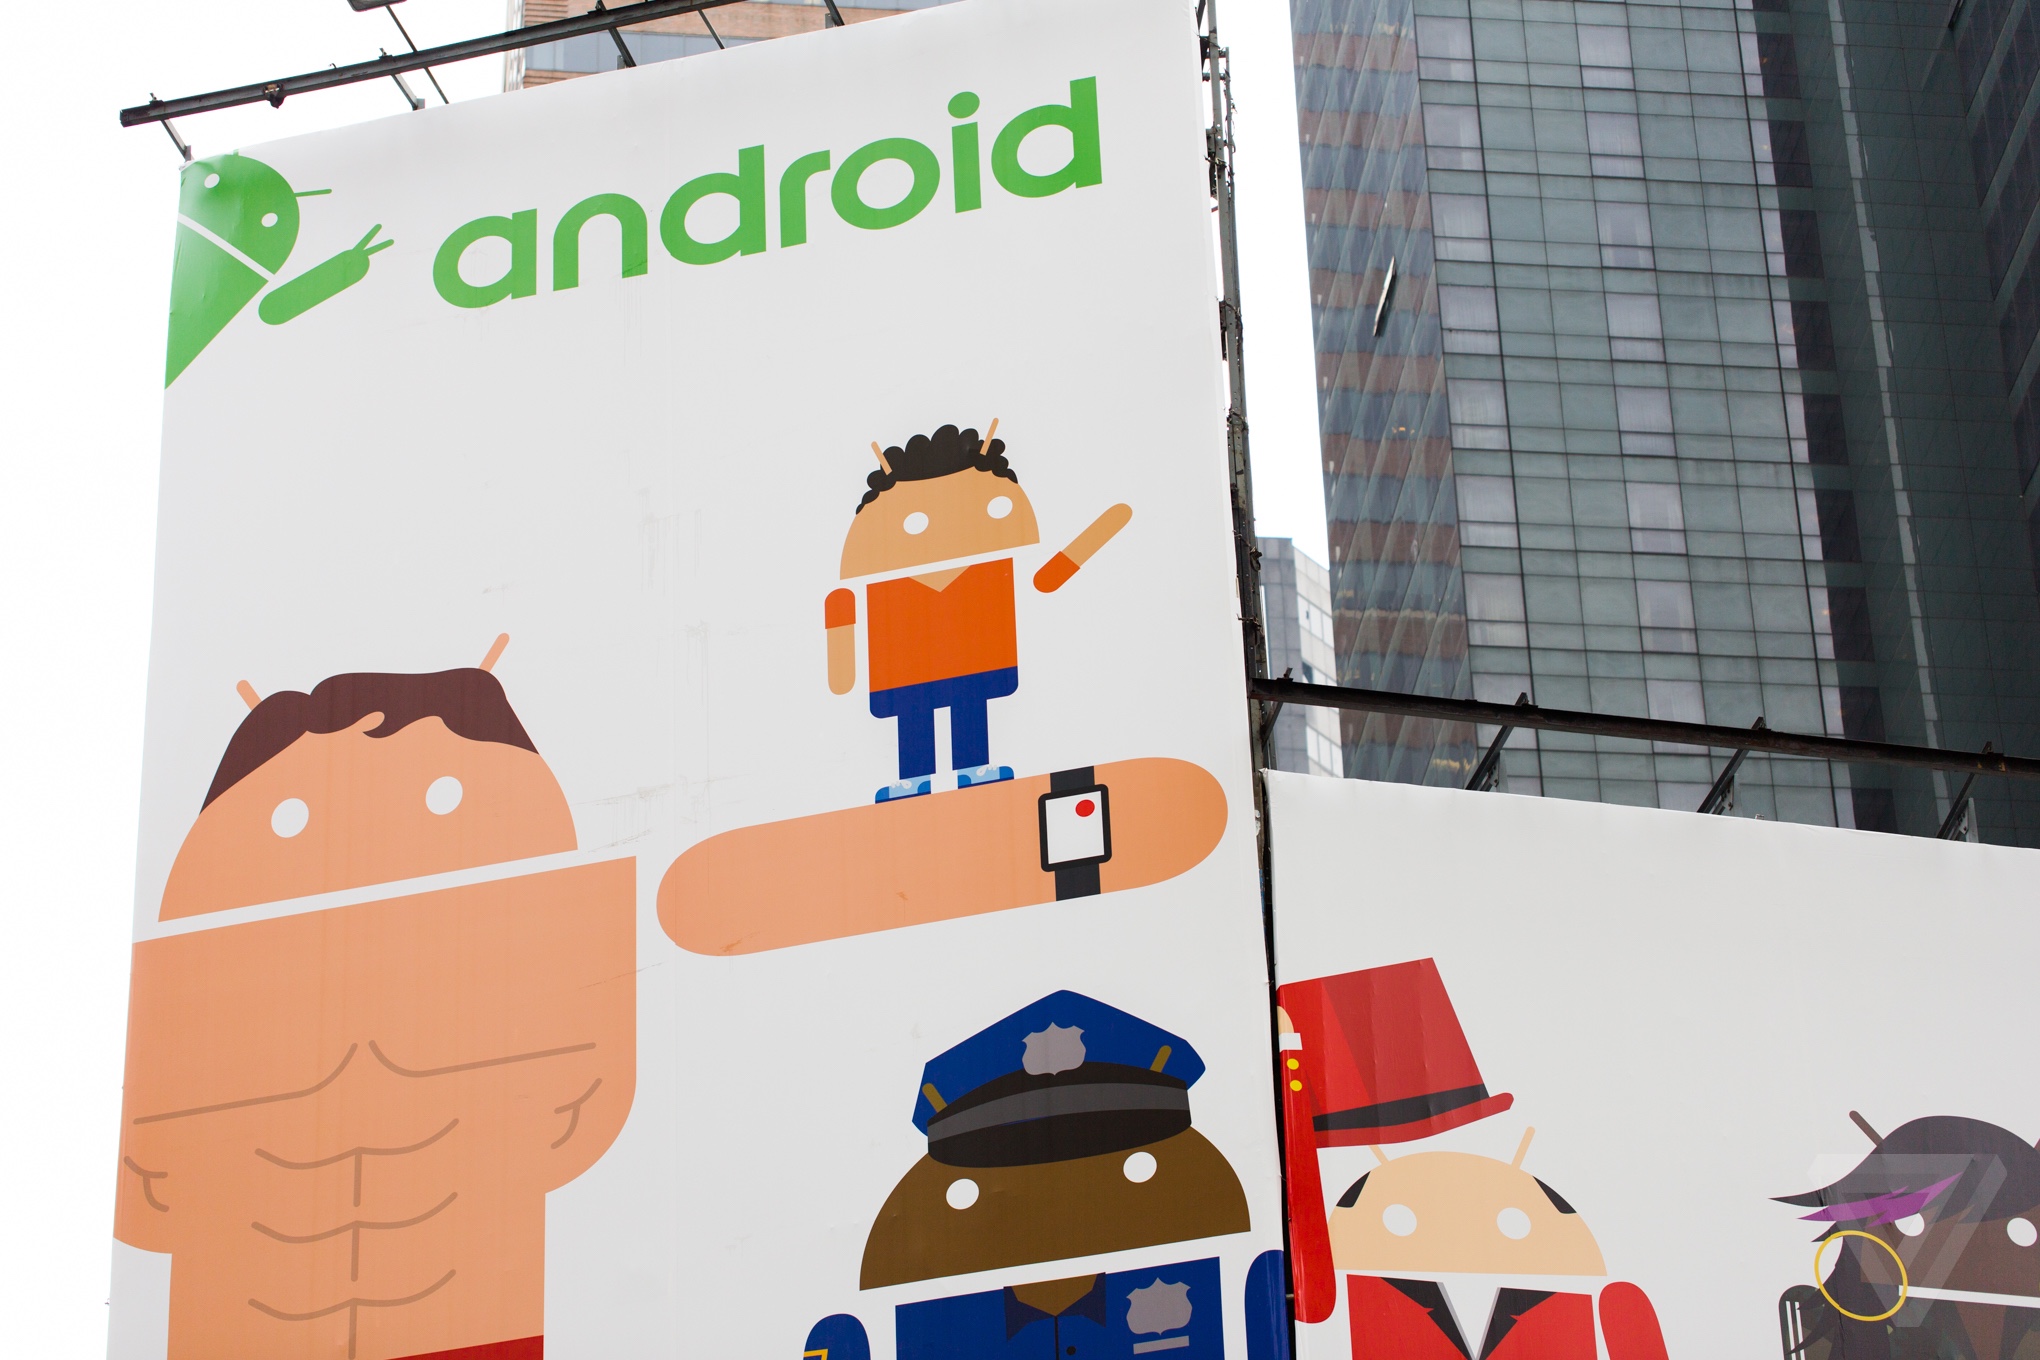 Еврокомиссия готовится выписать Google еще один штраф за злоупотребление доминирующим положением Android на сумму более 2,4 млрд евро